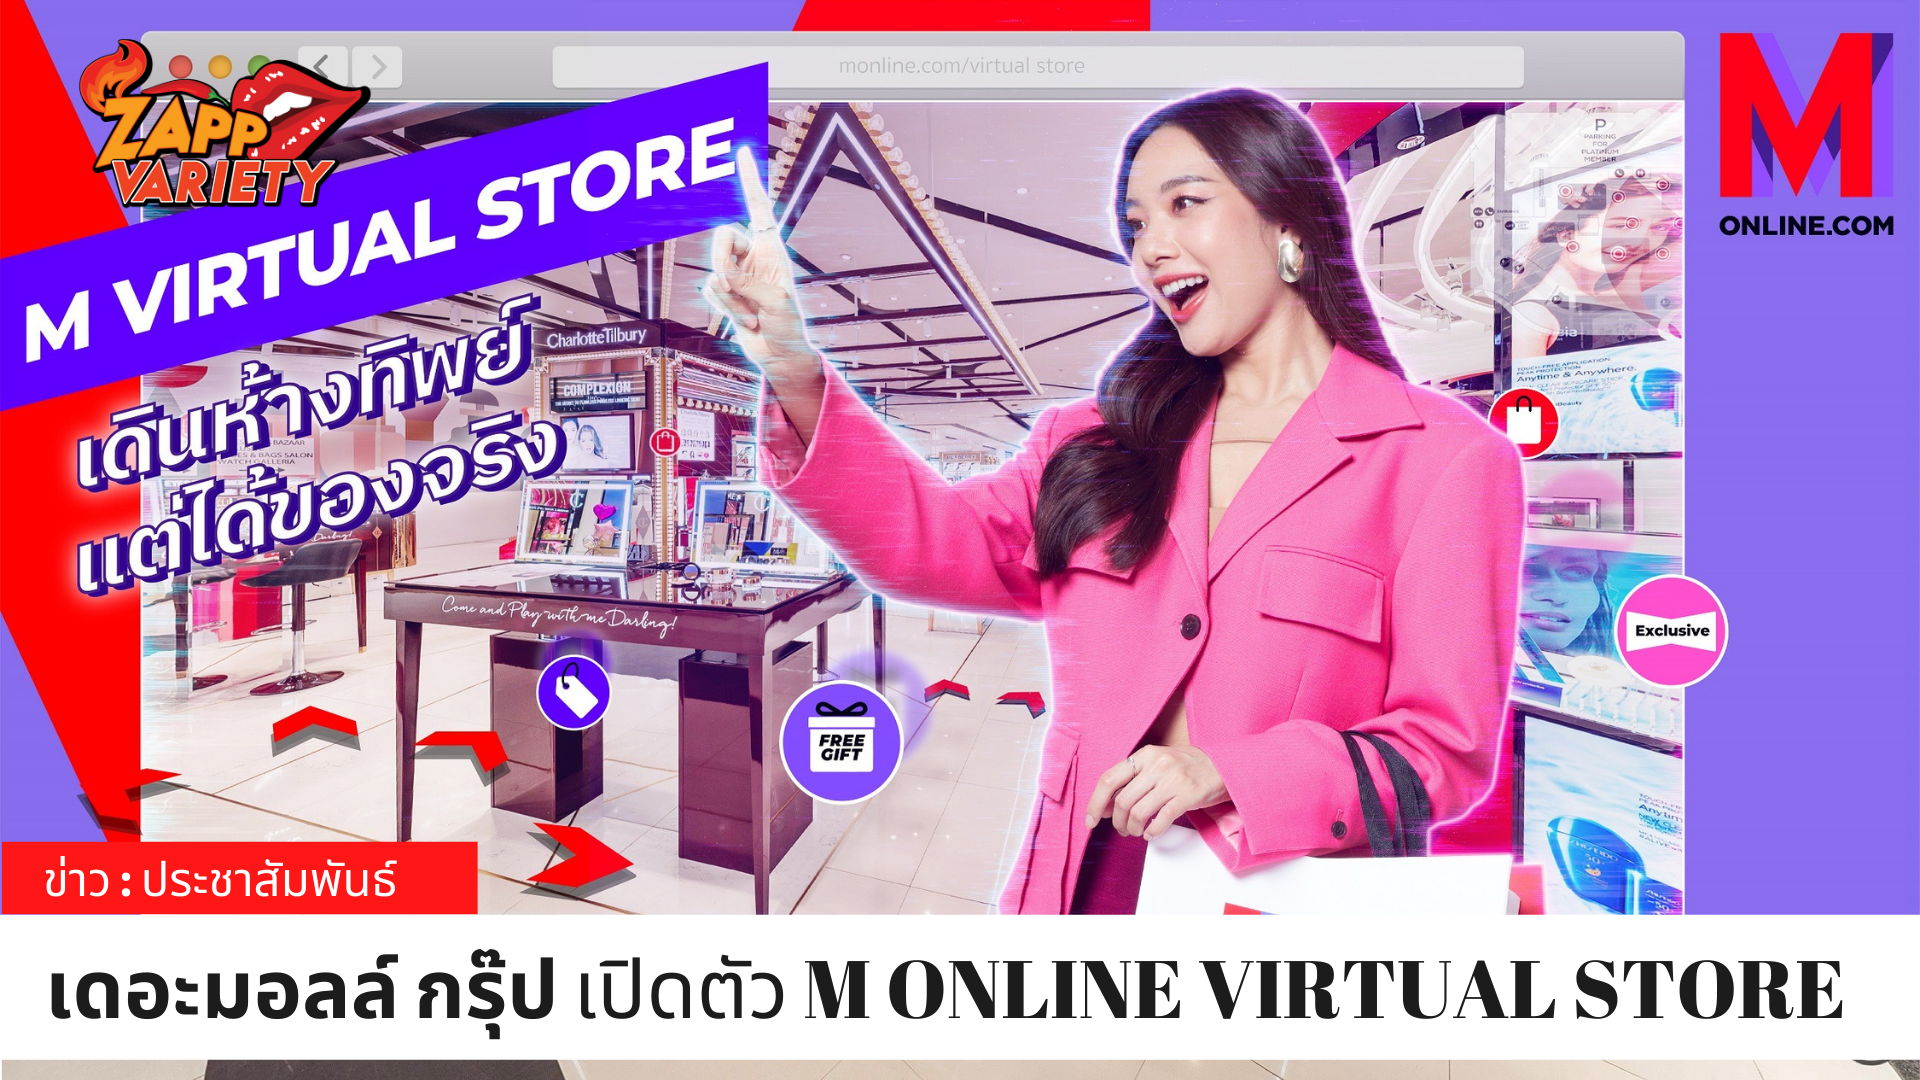 เดอะมอลล์ กรุ๊ป ตอกย้ำผู้นำ FUTURE RETAIL ของไทย เปิดตัว M ONLINE VIRTUAL STORE ห้างฯ แรก เสริมทัพออมนิชาแนลให้ยิ่งแข็งแกร่ง